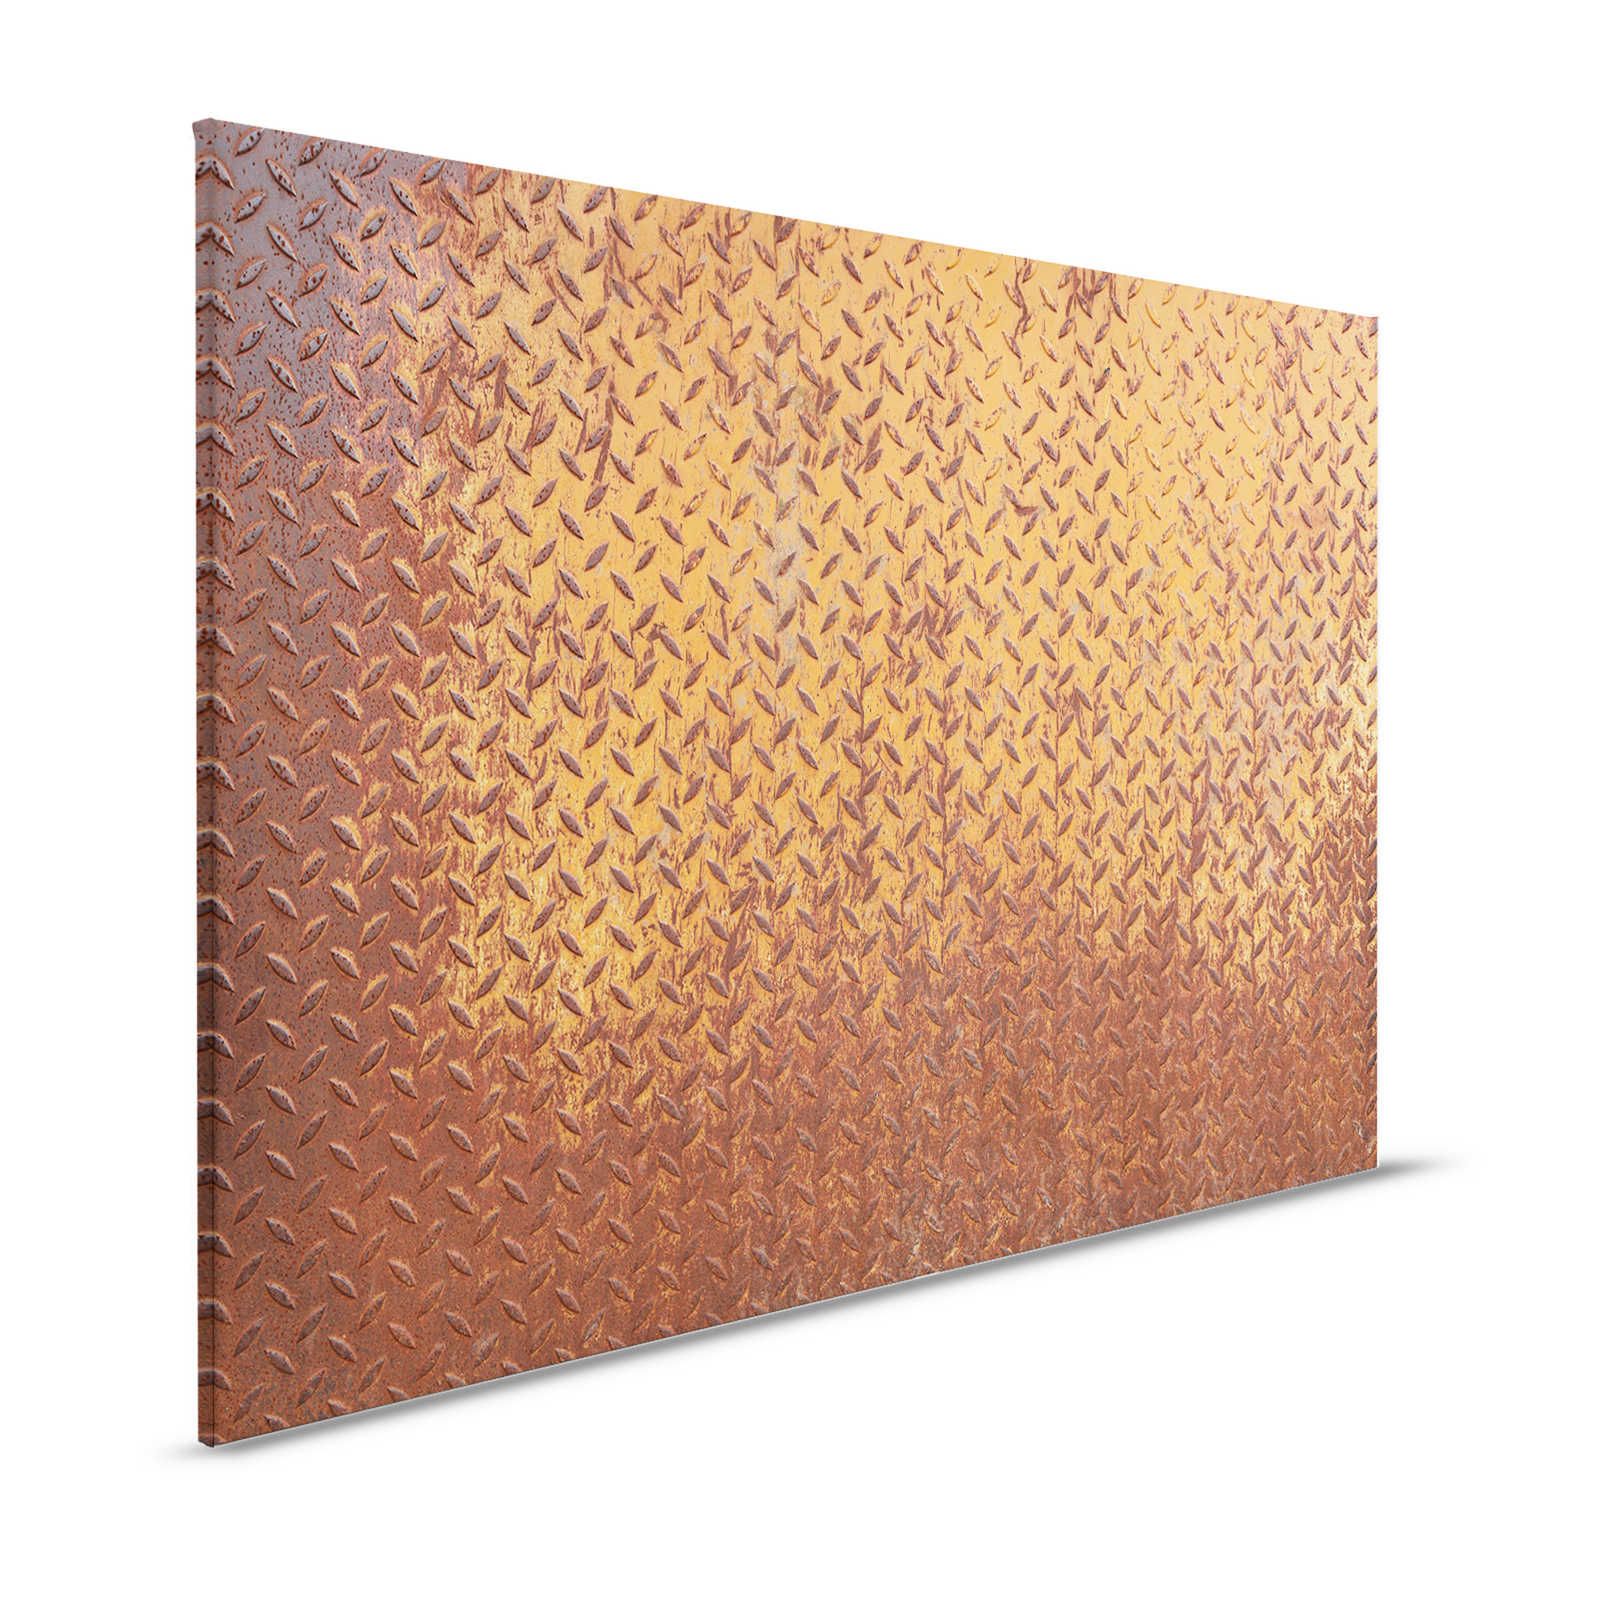 Metalen canvas schilderij Staalplaat Roest met Diamantpatroon - 1,20 m x 0,80 m
